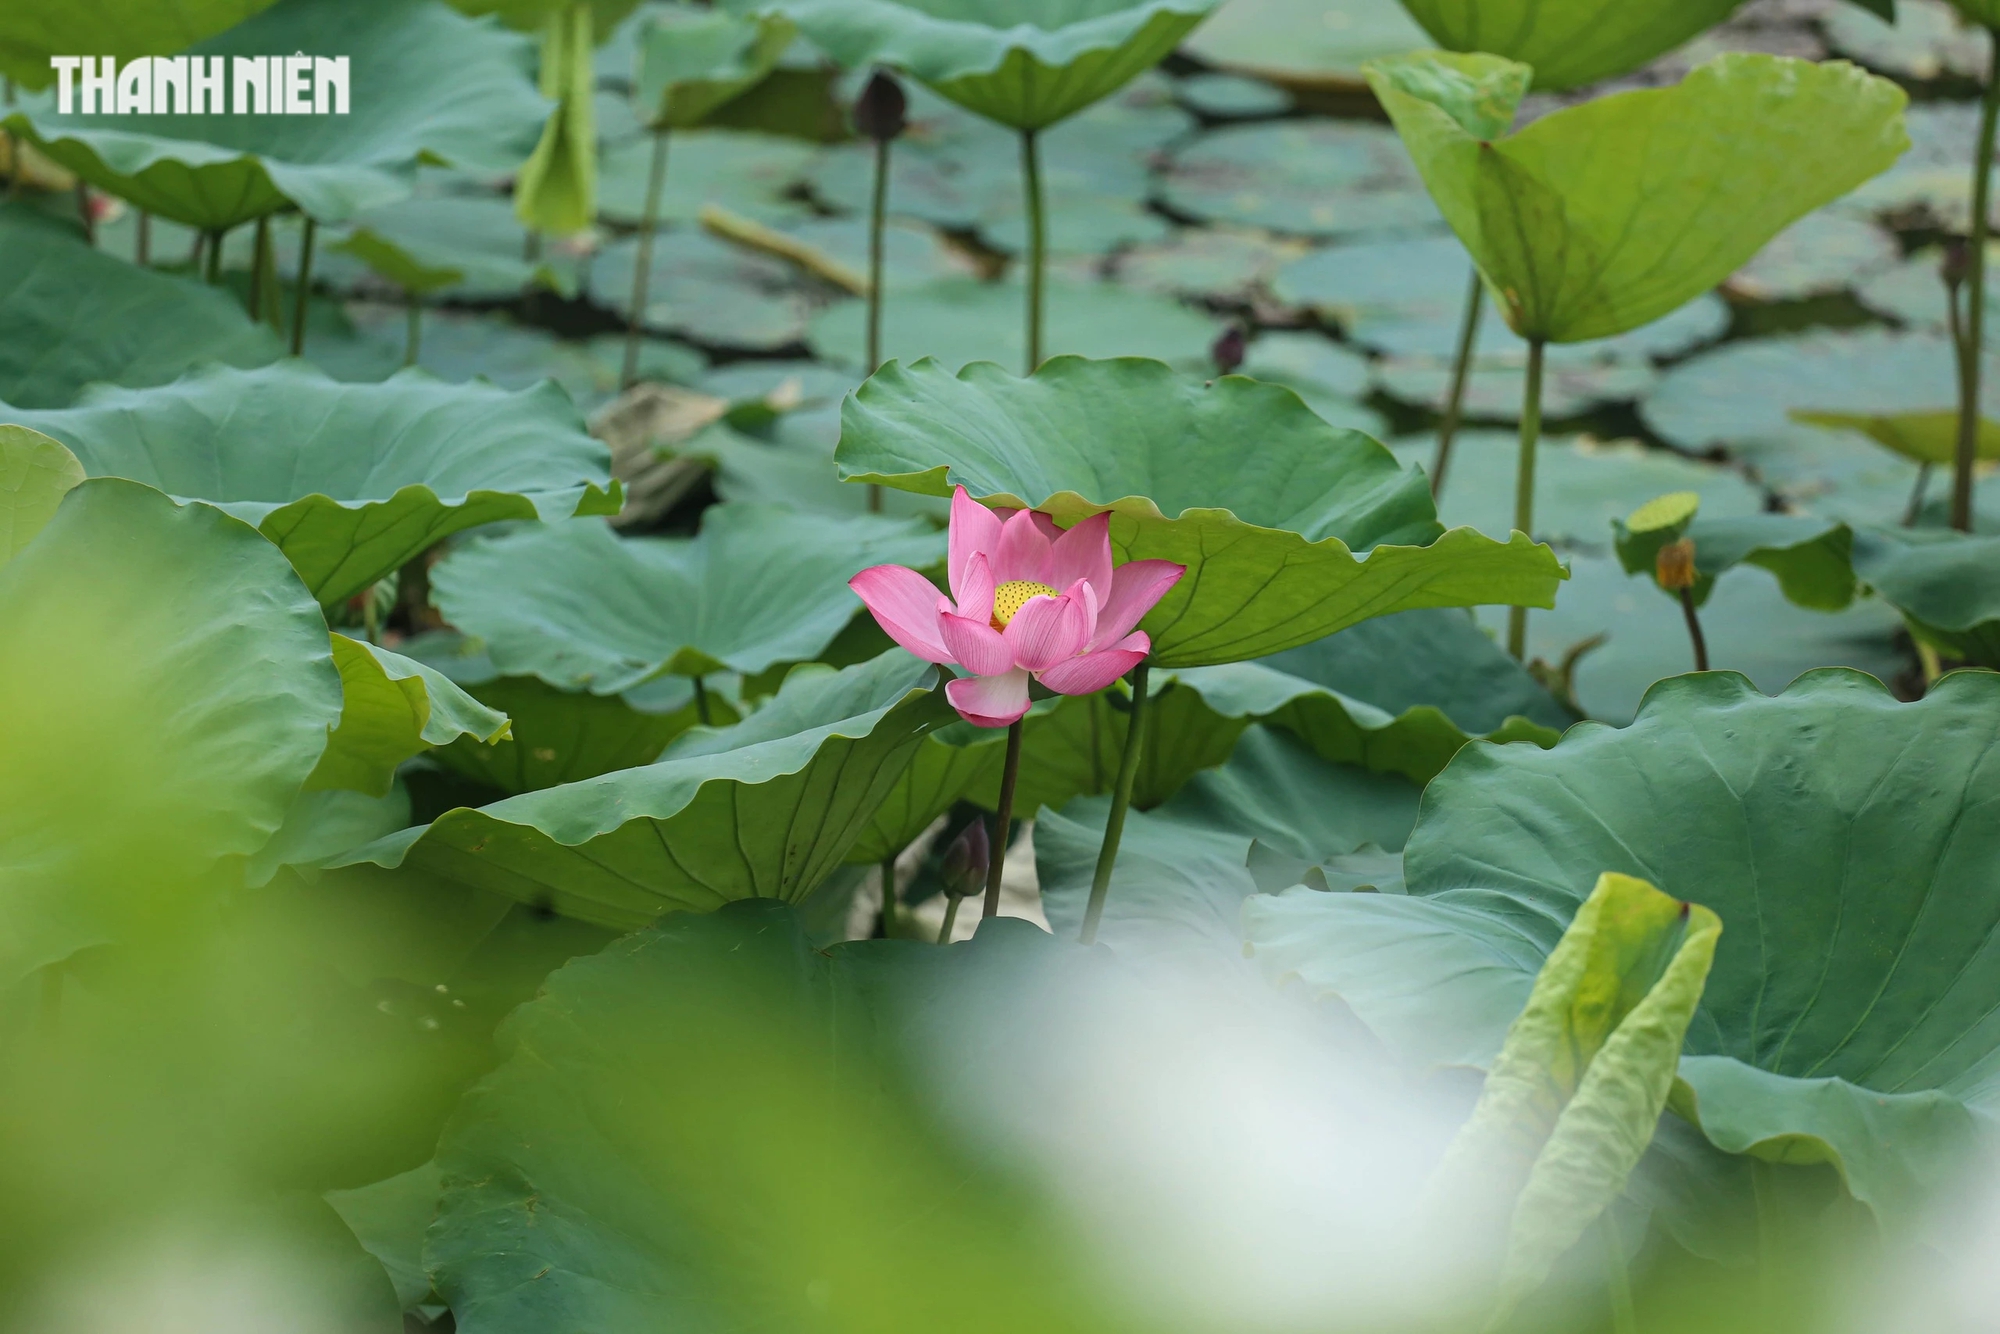 Tháng 5, hoa sen bắt đầu bung nở. Hoa sen gắn bó với con người xứ Huế từ bao đời, được trồng nhiều trong các ao hồ, kênh rạch trong thành nội hay vùng ngoại ô